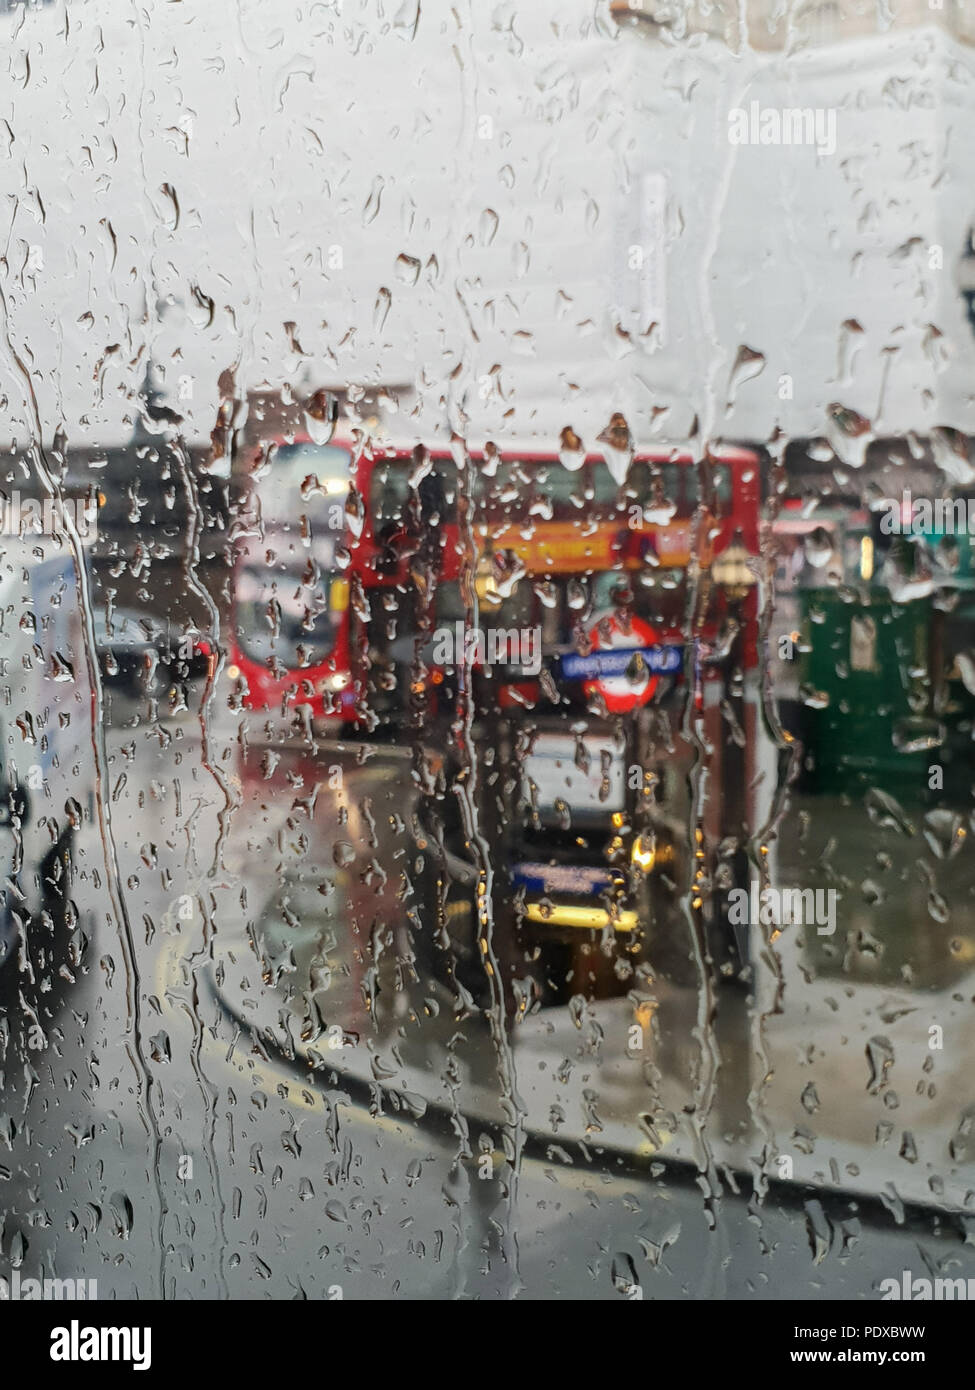 Regents Street. Londres. UK 10 Aug 2018 - Vue de Londres, Regent Street et le bus à impériale rouge grâce à une fenêtre de l'autobus au cours de fortes pluies dans le centre de Londres. Roamwithrakhee Crédit /Alamy Live News Banque D'Images